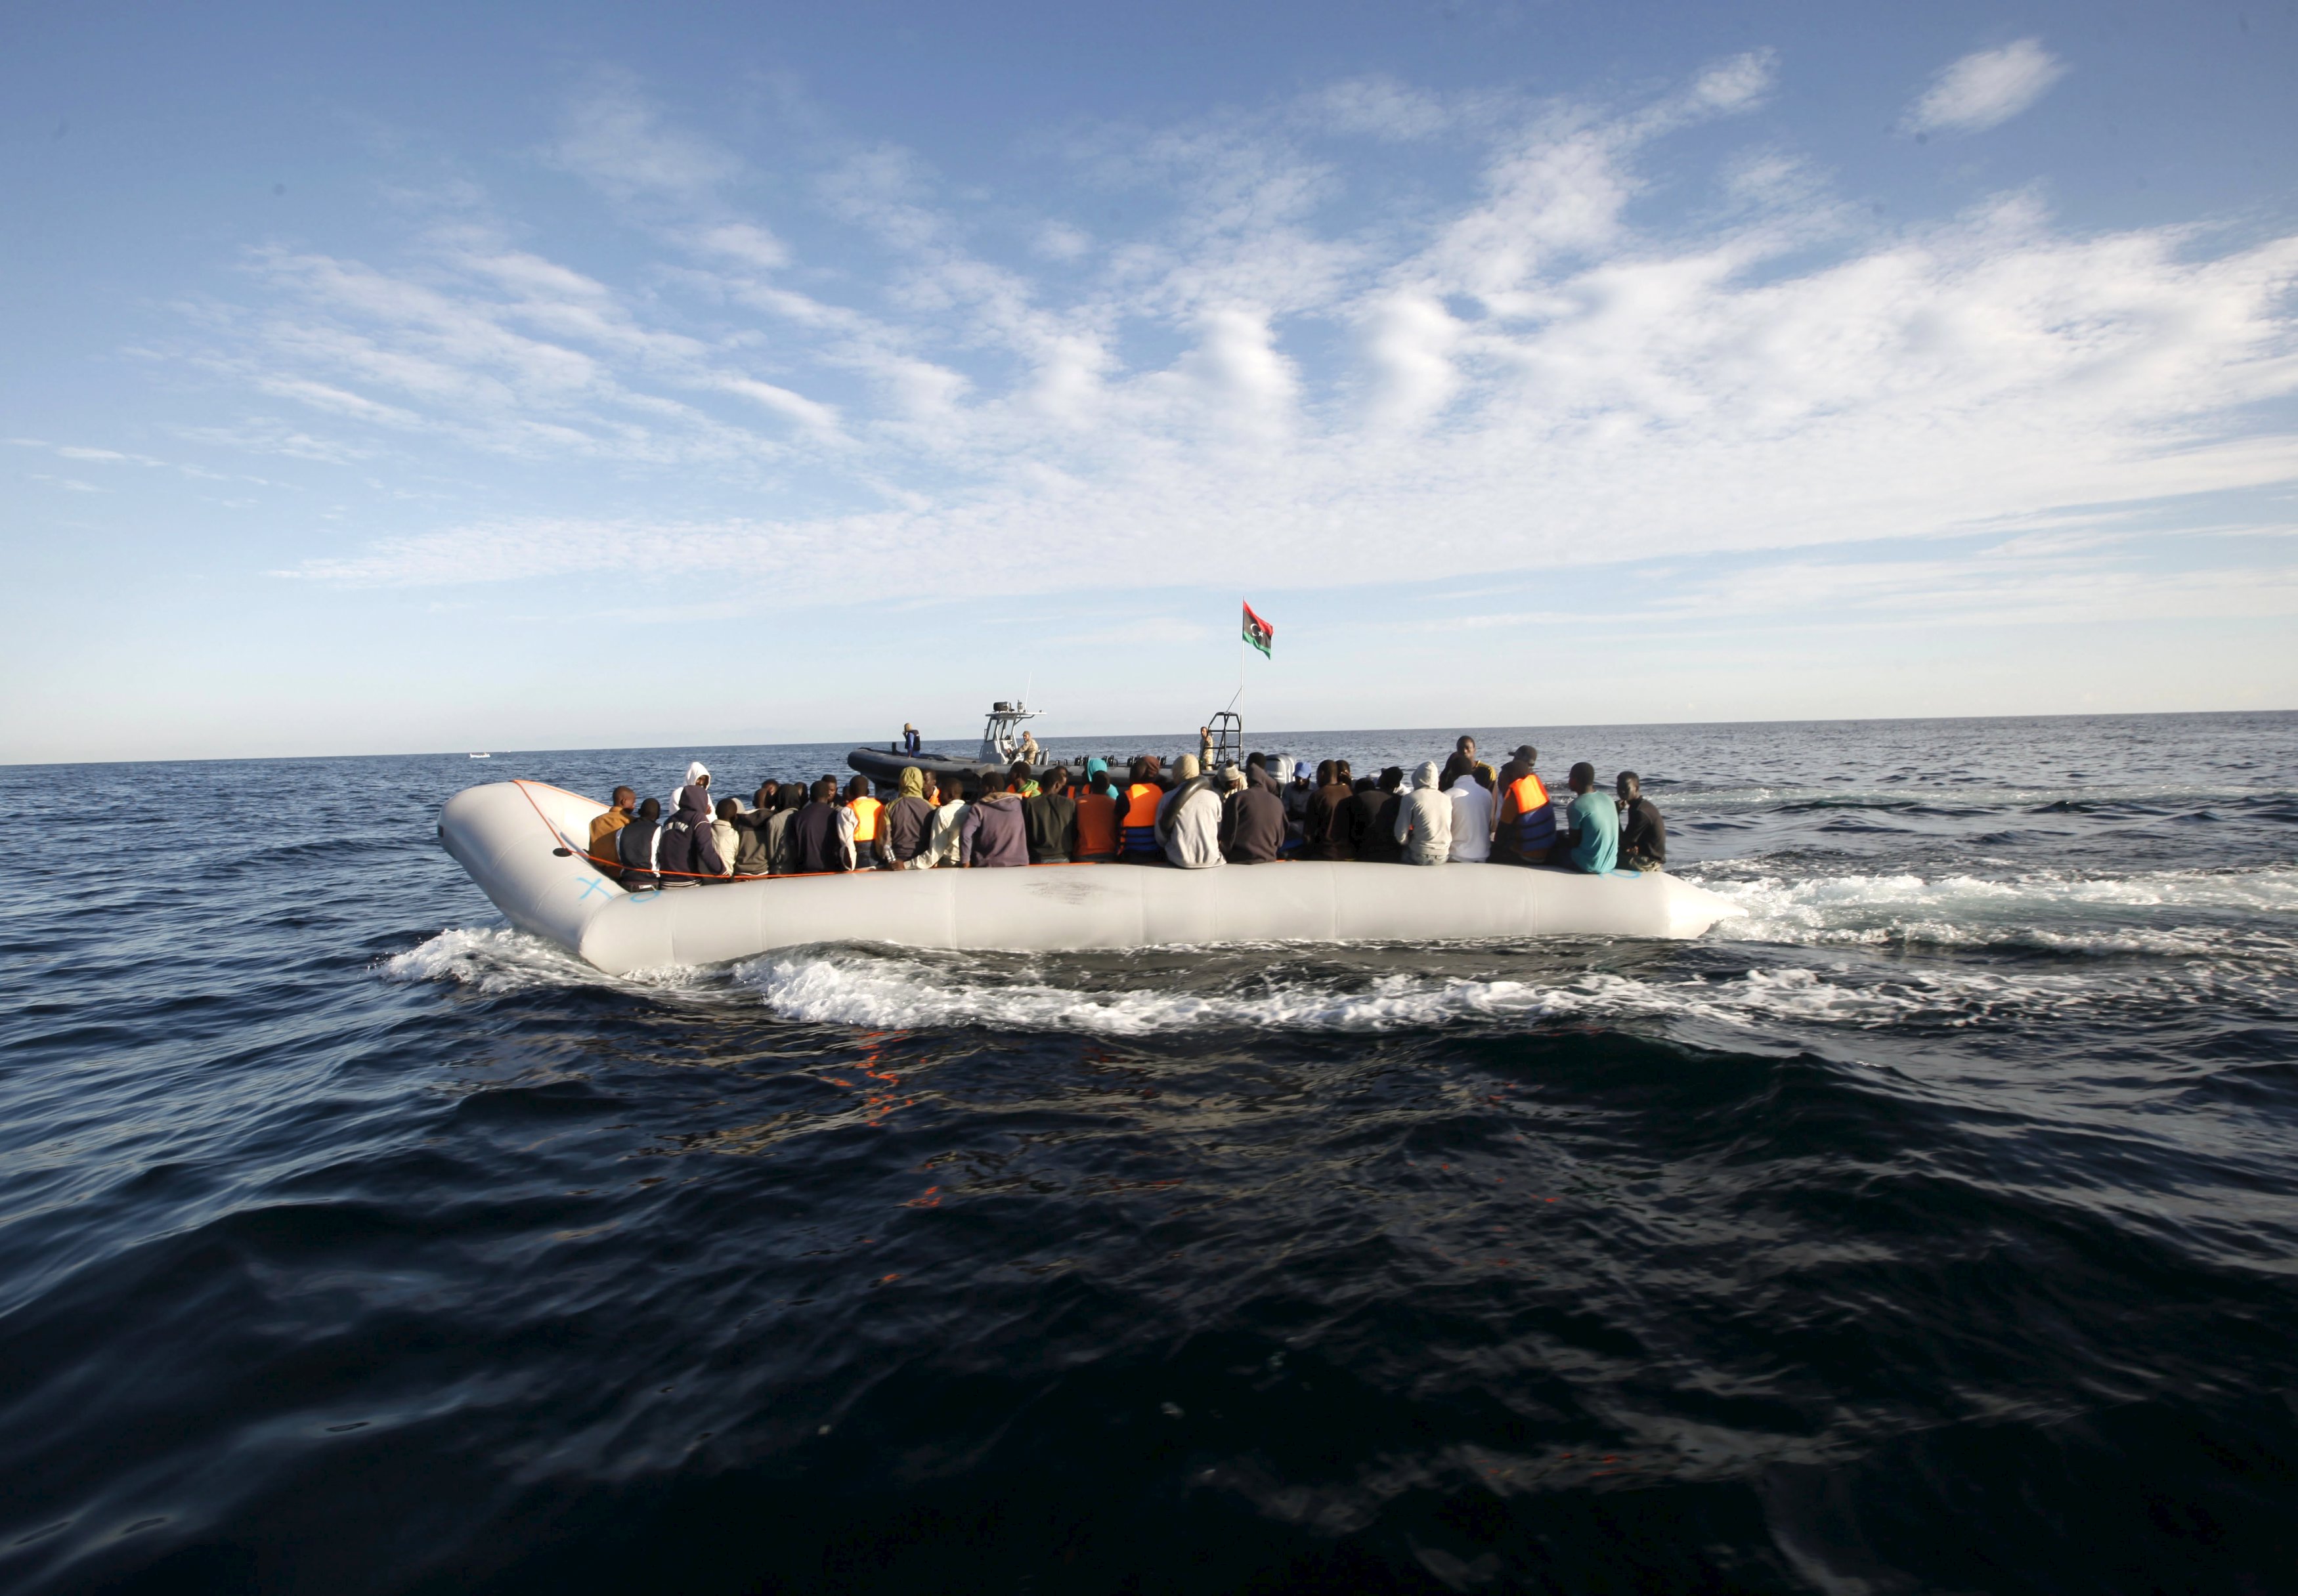 Λιβύη: Σταμάτησαν σκάφη με 500 πρόσφυγες προς την Ευρώπη